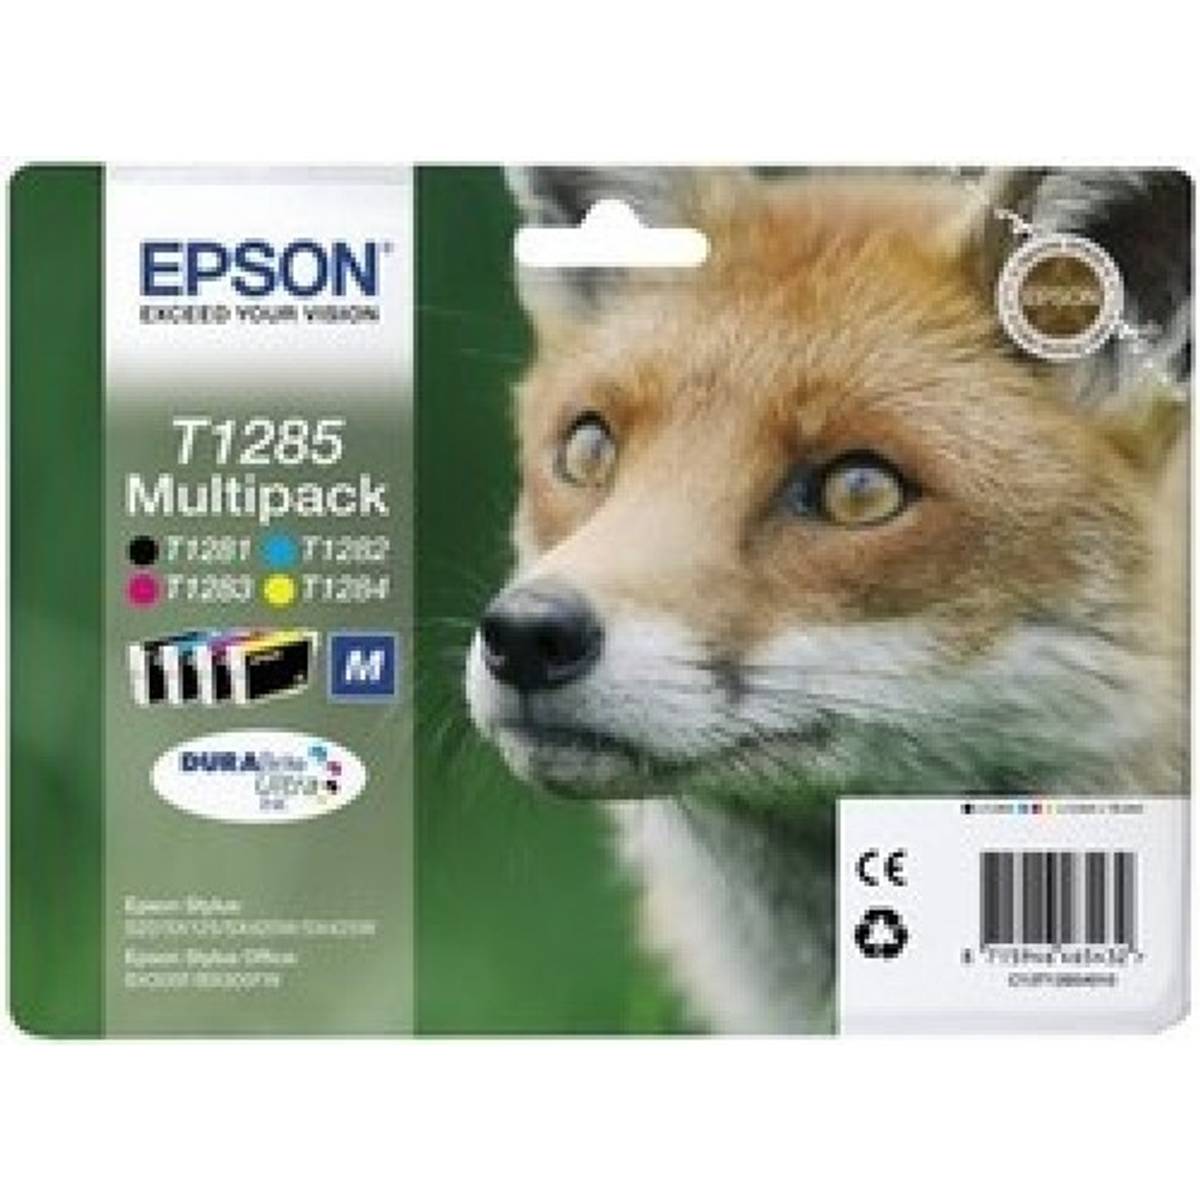 Epson t1285 multipack blækpatron • Find billigste pris hos ...